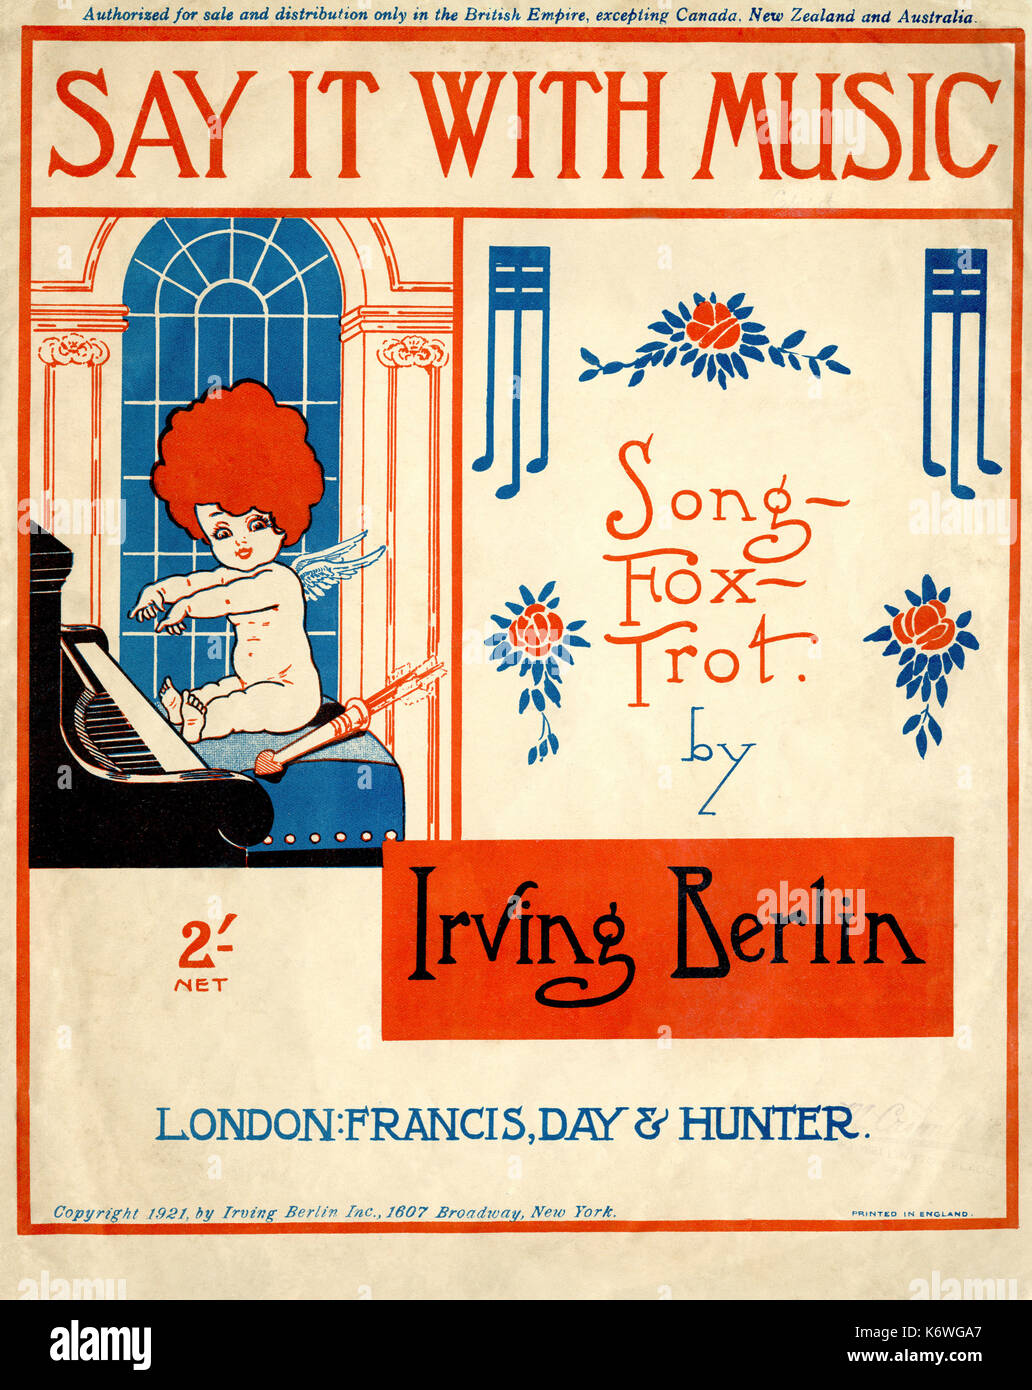 Es mit der Musik von Irving Berlin sagen. Veröffentlicht London, Francis, Day & Hunter, 1921. Irving Berlin Inc. Engel Klavier spielen Stockfoto